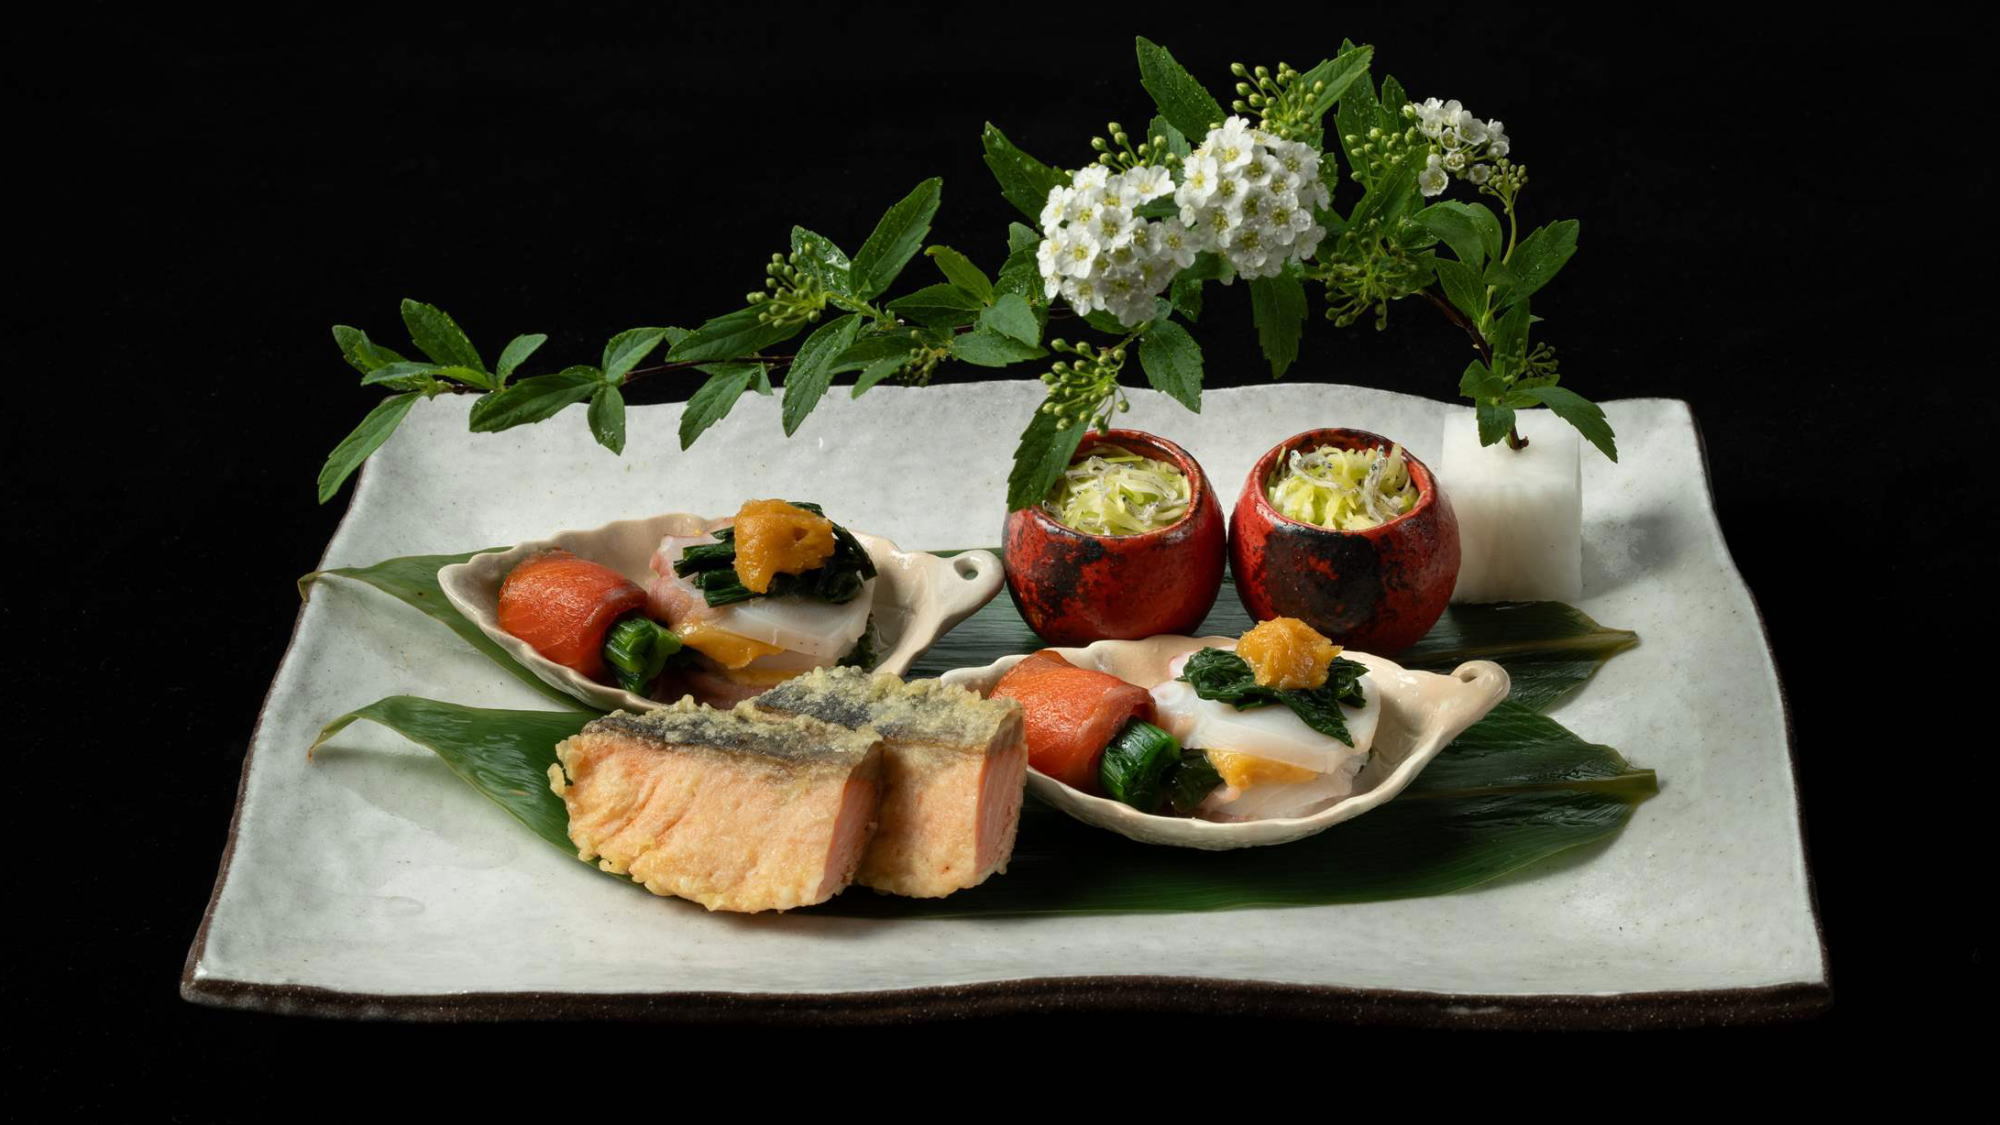 【楽天月末セール】新鮮魚介やお野菜、道産牛など北海道の逸品素材をふんだんに使用した「道産素材会席」